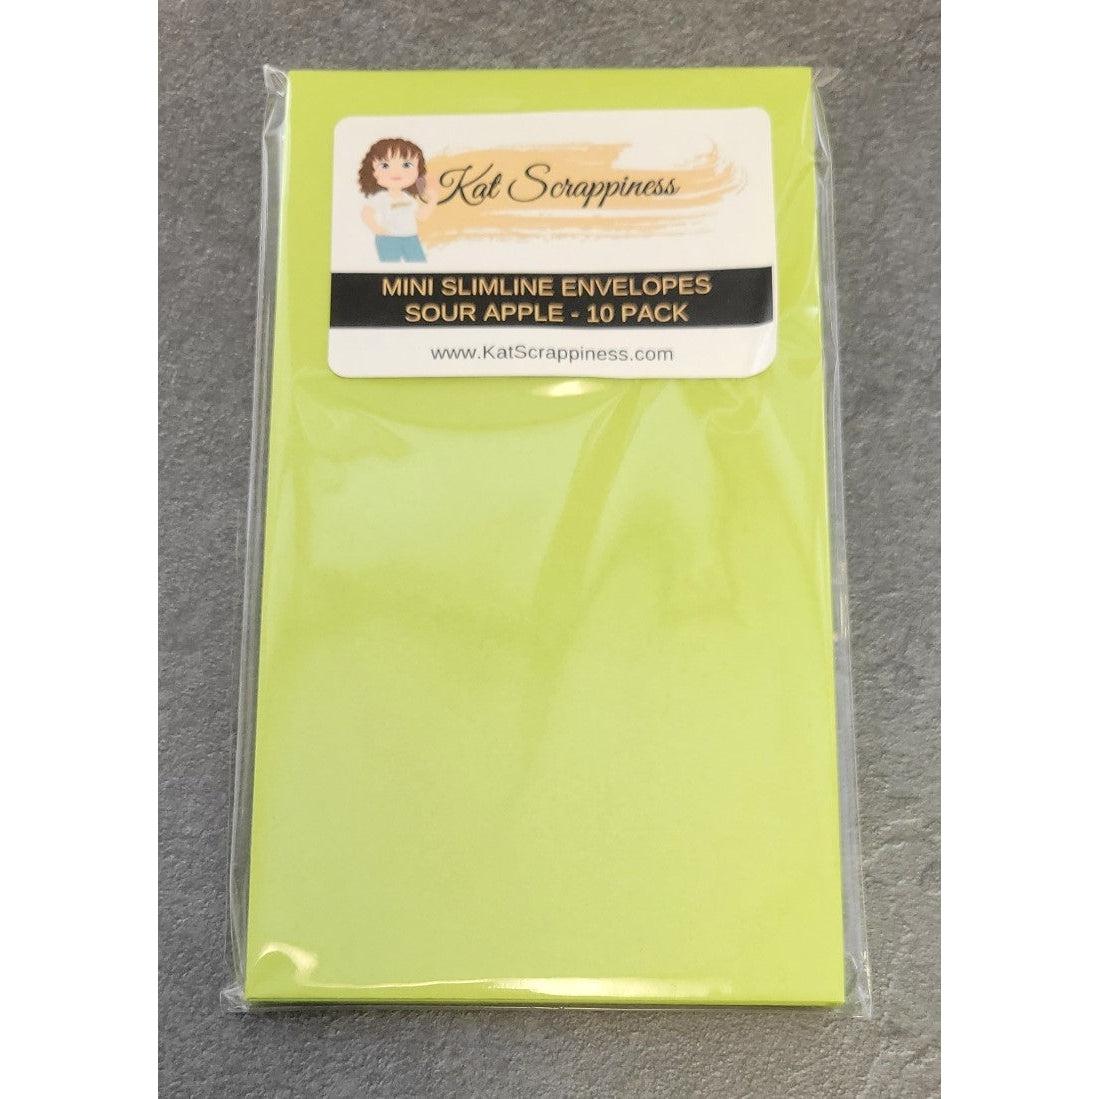 Mini Slimline Envelopes - Sour Apple - 10 pack